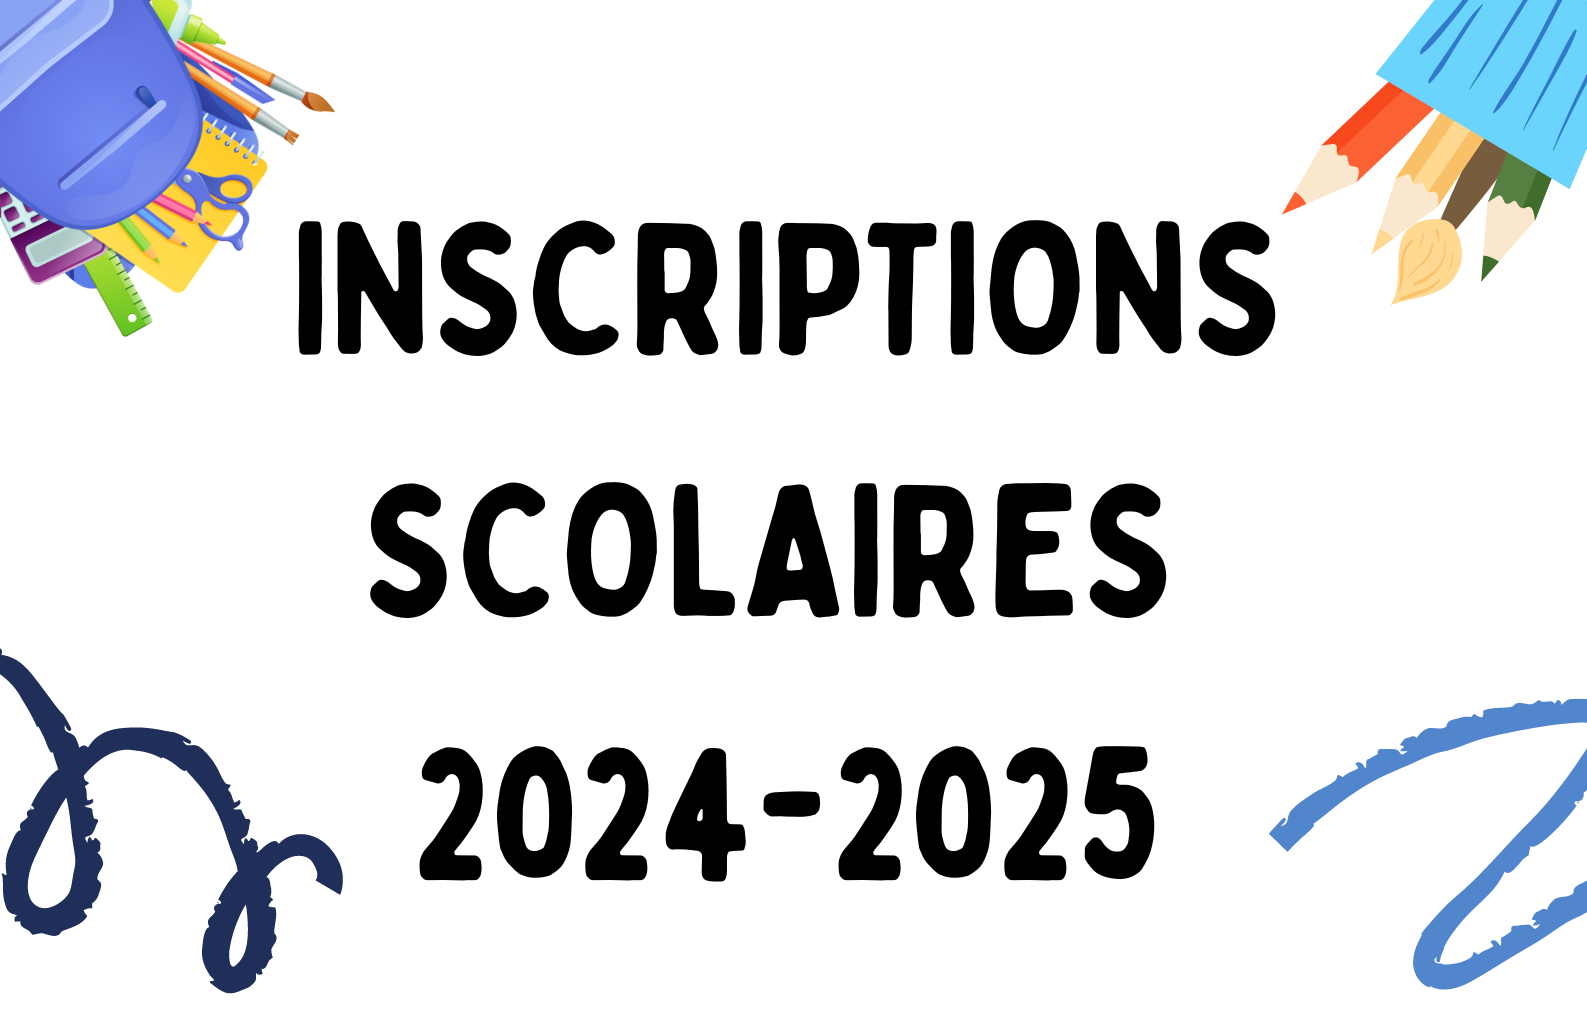 Image de couverture - Les inscriptions scolaires 2024-2025